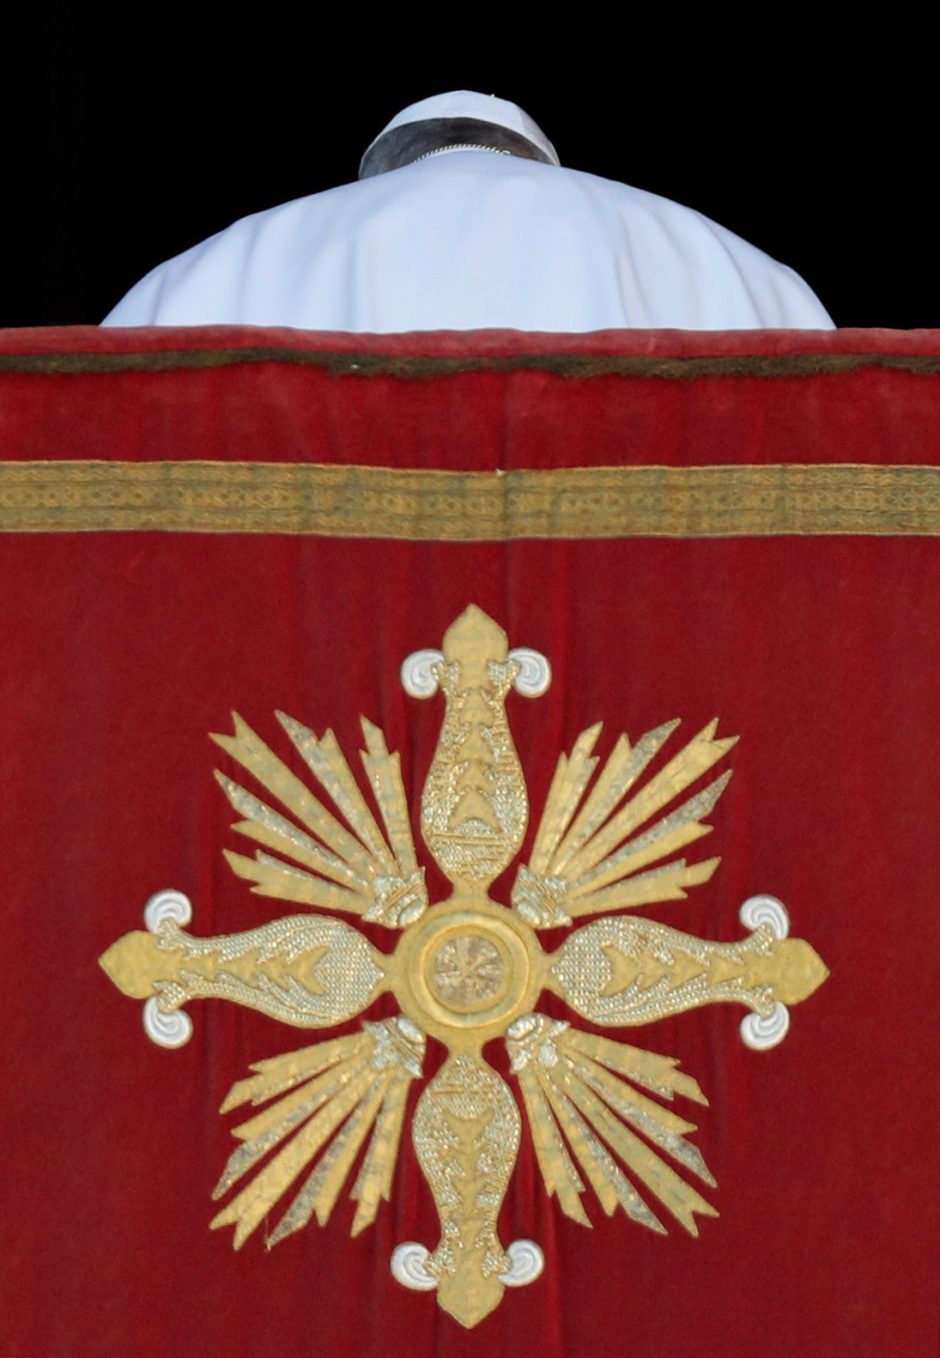 Popiežiaus Kalėdų linkėjimas: pasaulinė brolybė nepaisant skirtumų